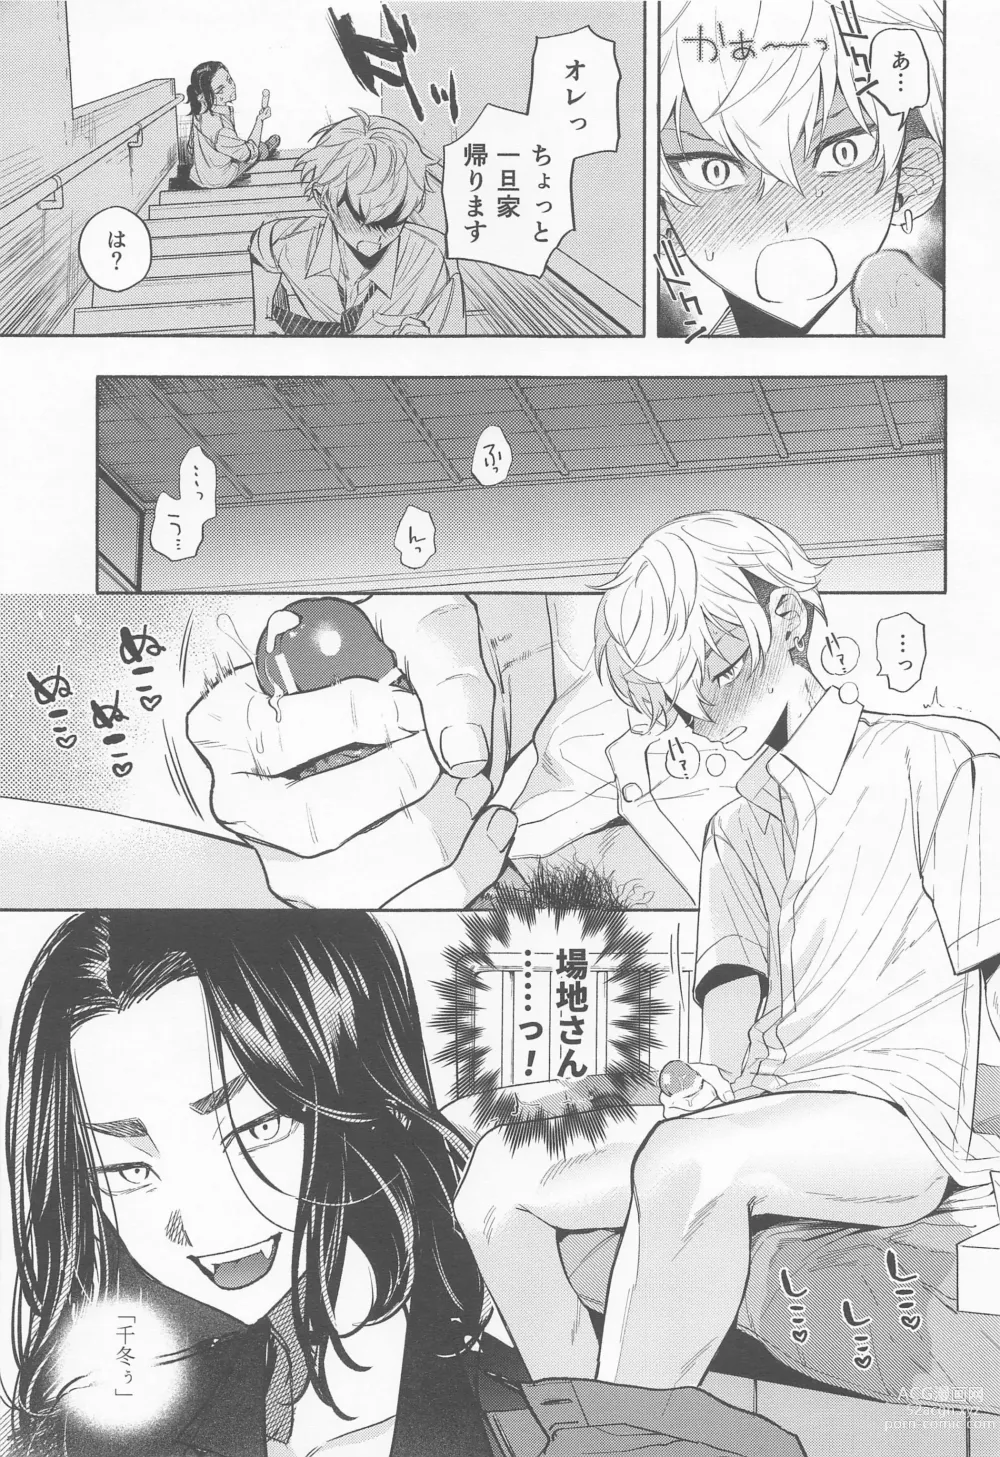 Page 8 of doujinshi Genjitsu wa, masturbation yori Kimochi  - reality feels better than masturbation